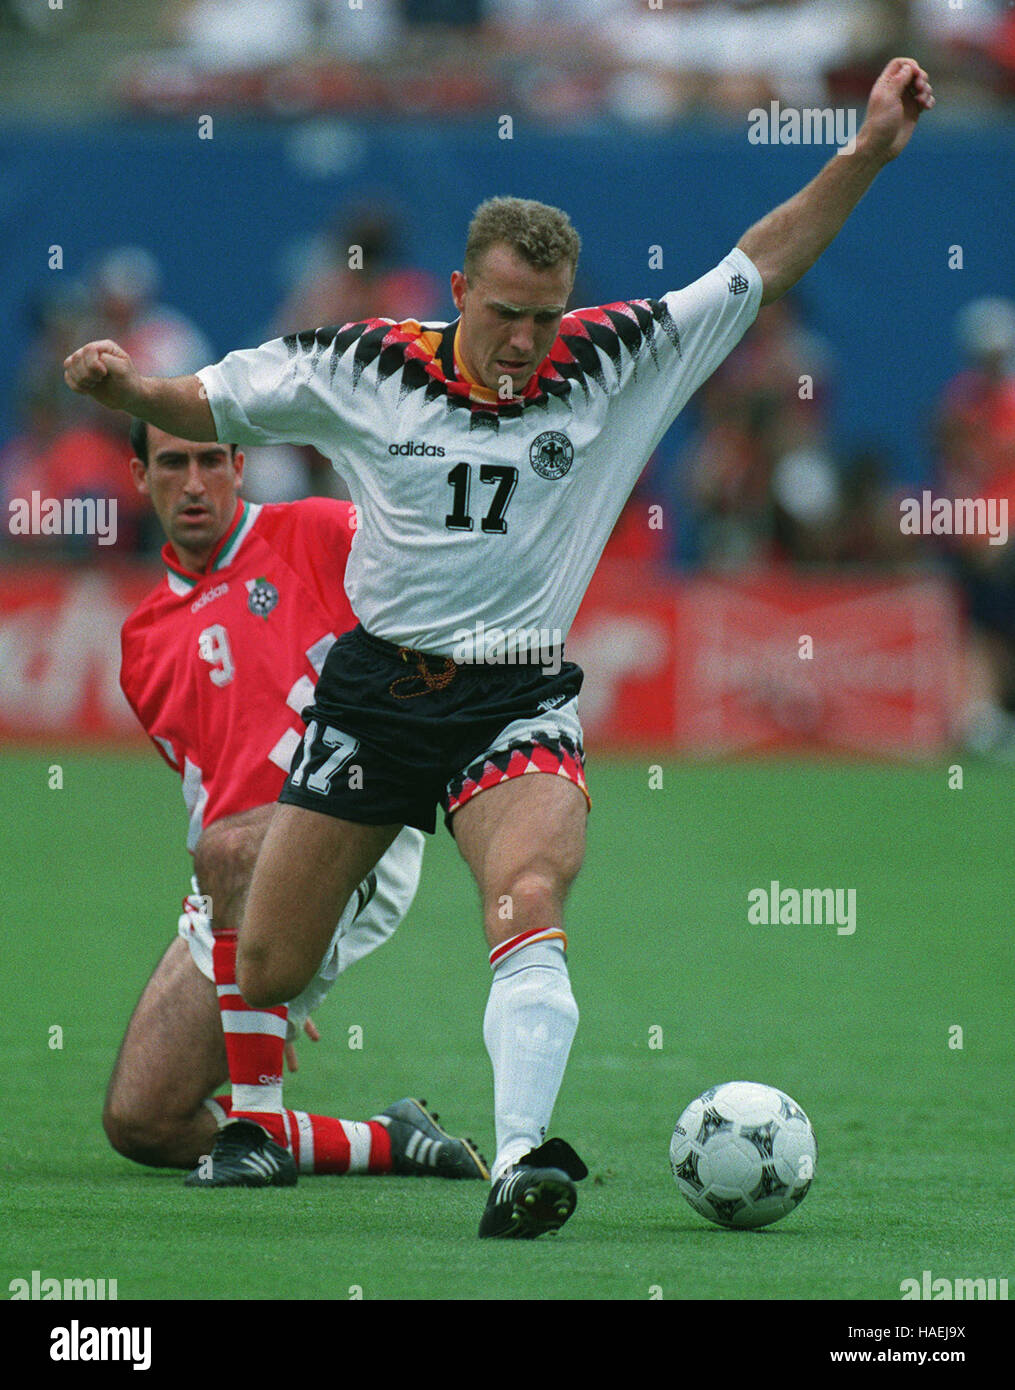 1994 Germany Soccer jersey Stock Photo - Alamy